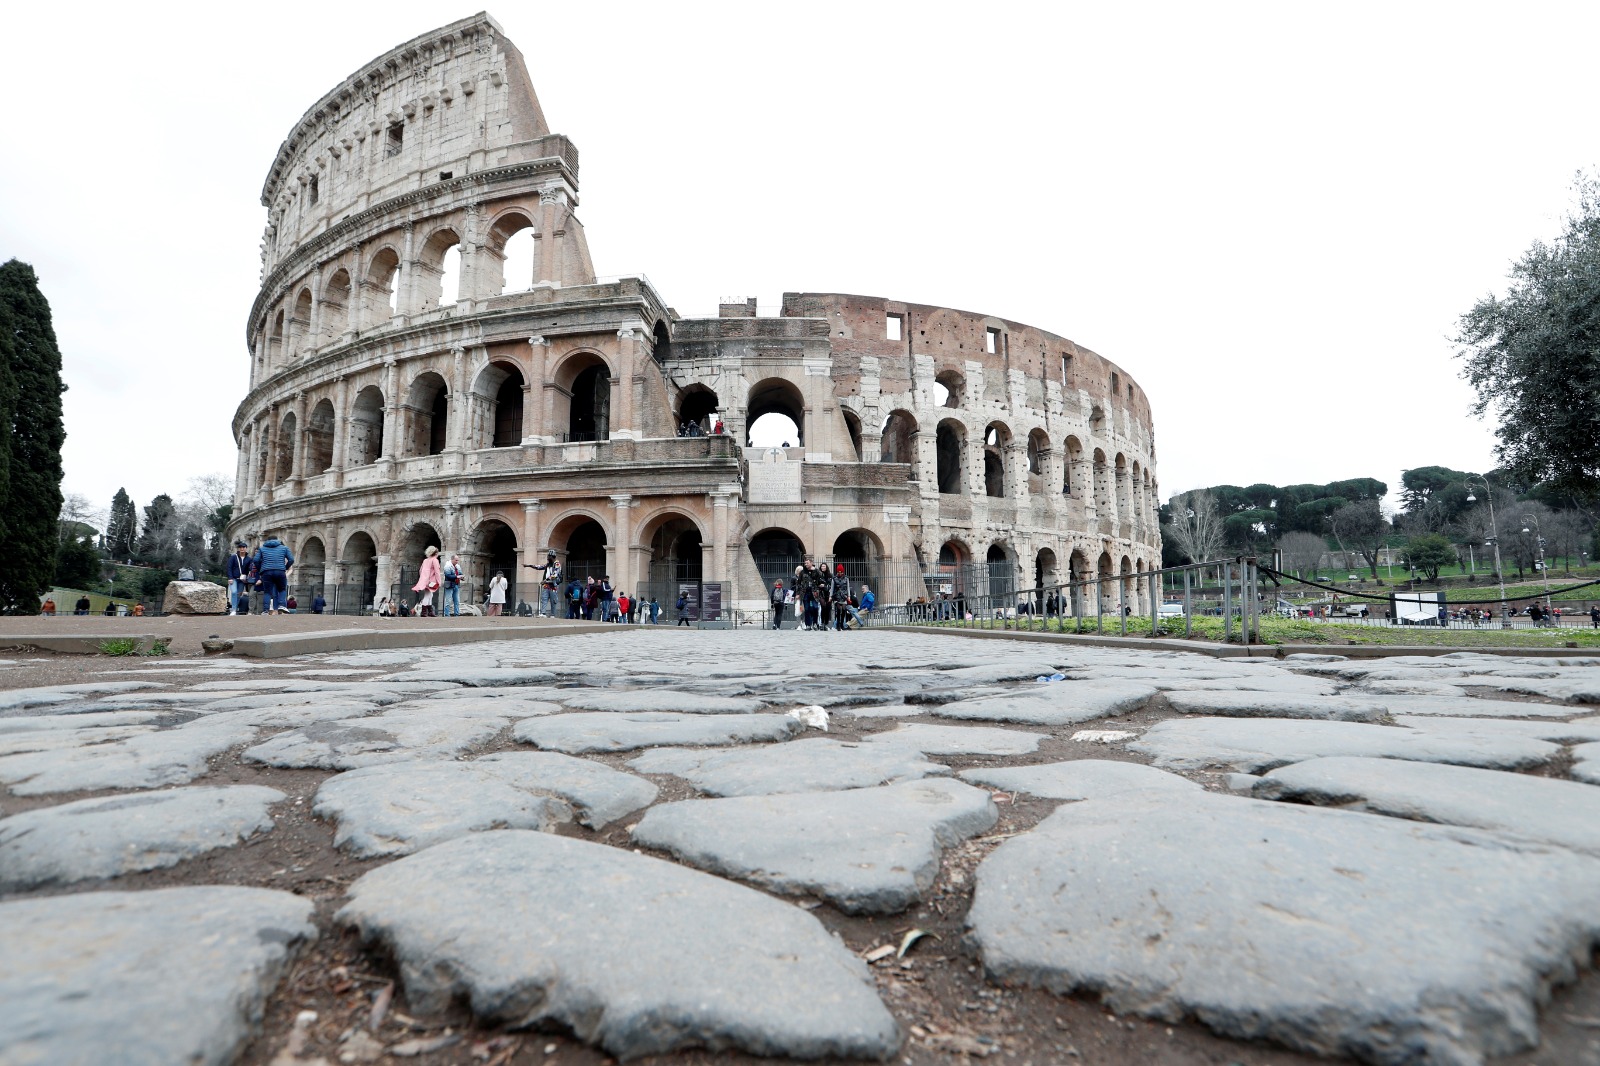 أهم معالم السياحة في العاصمة الإيطالية روما مدرج الكولوسيوم ويرجع تاريخه إلى القرن الأول الميلادي. 2 مارس 2020